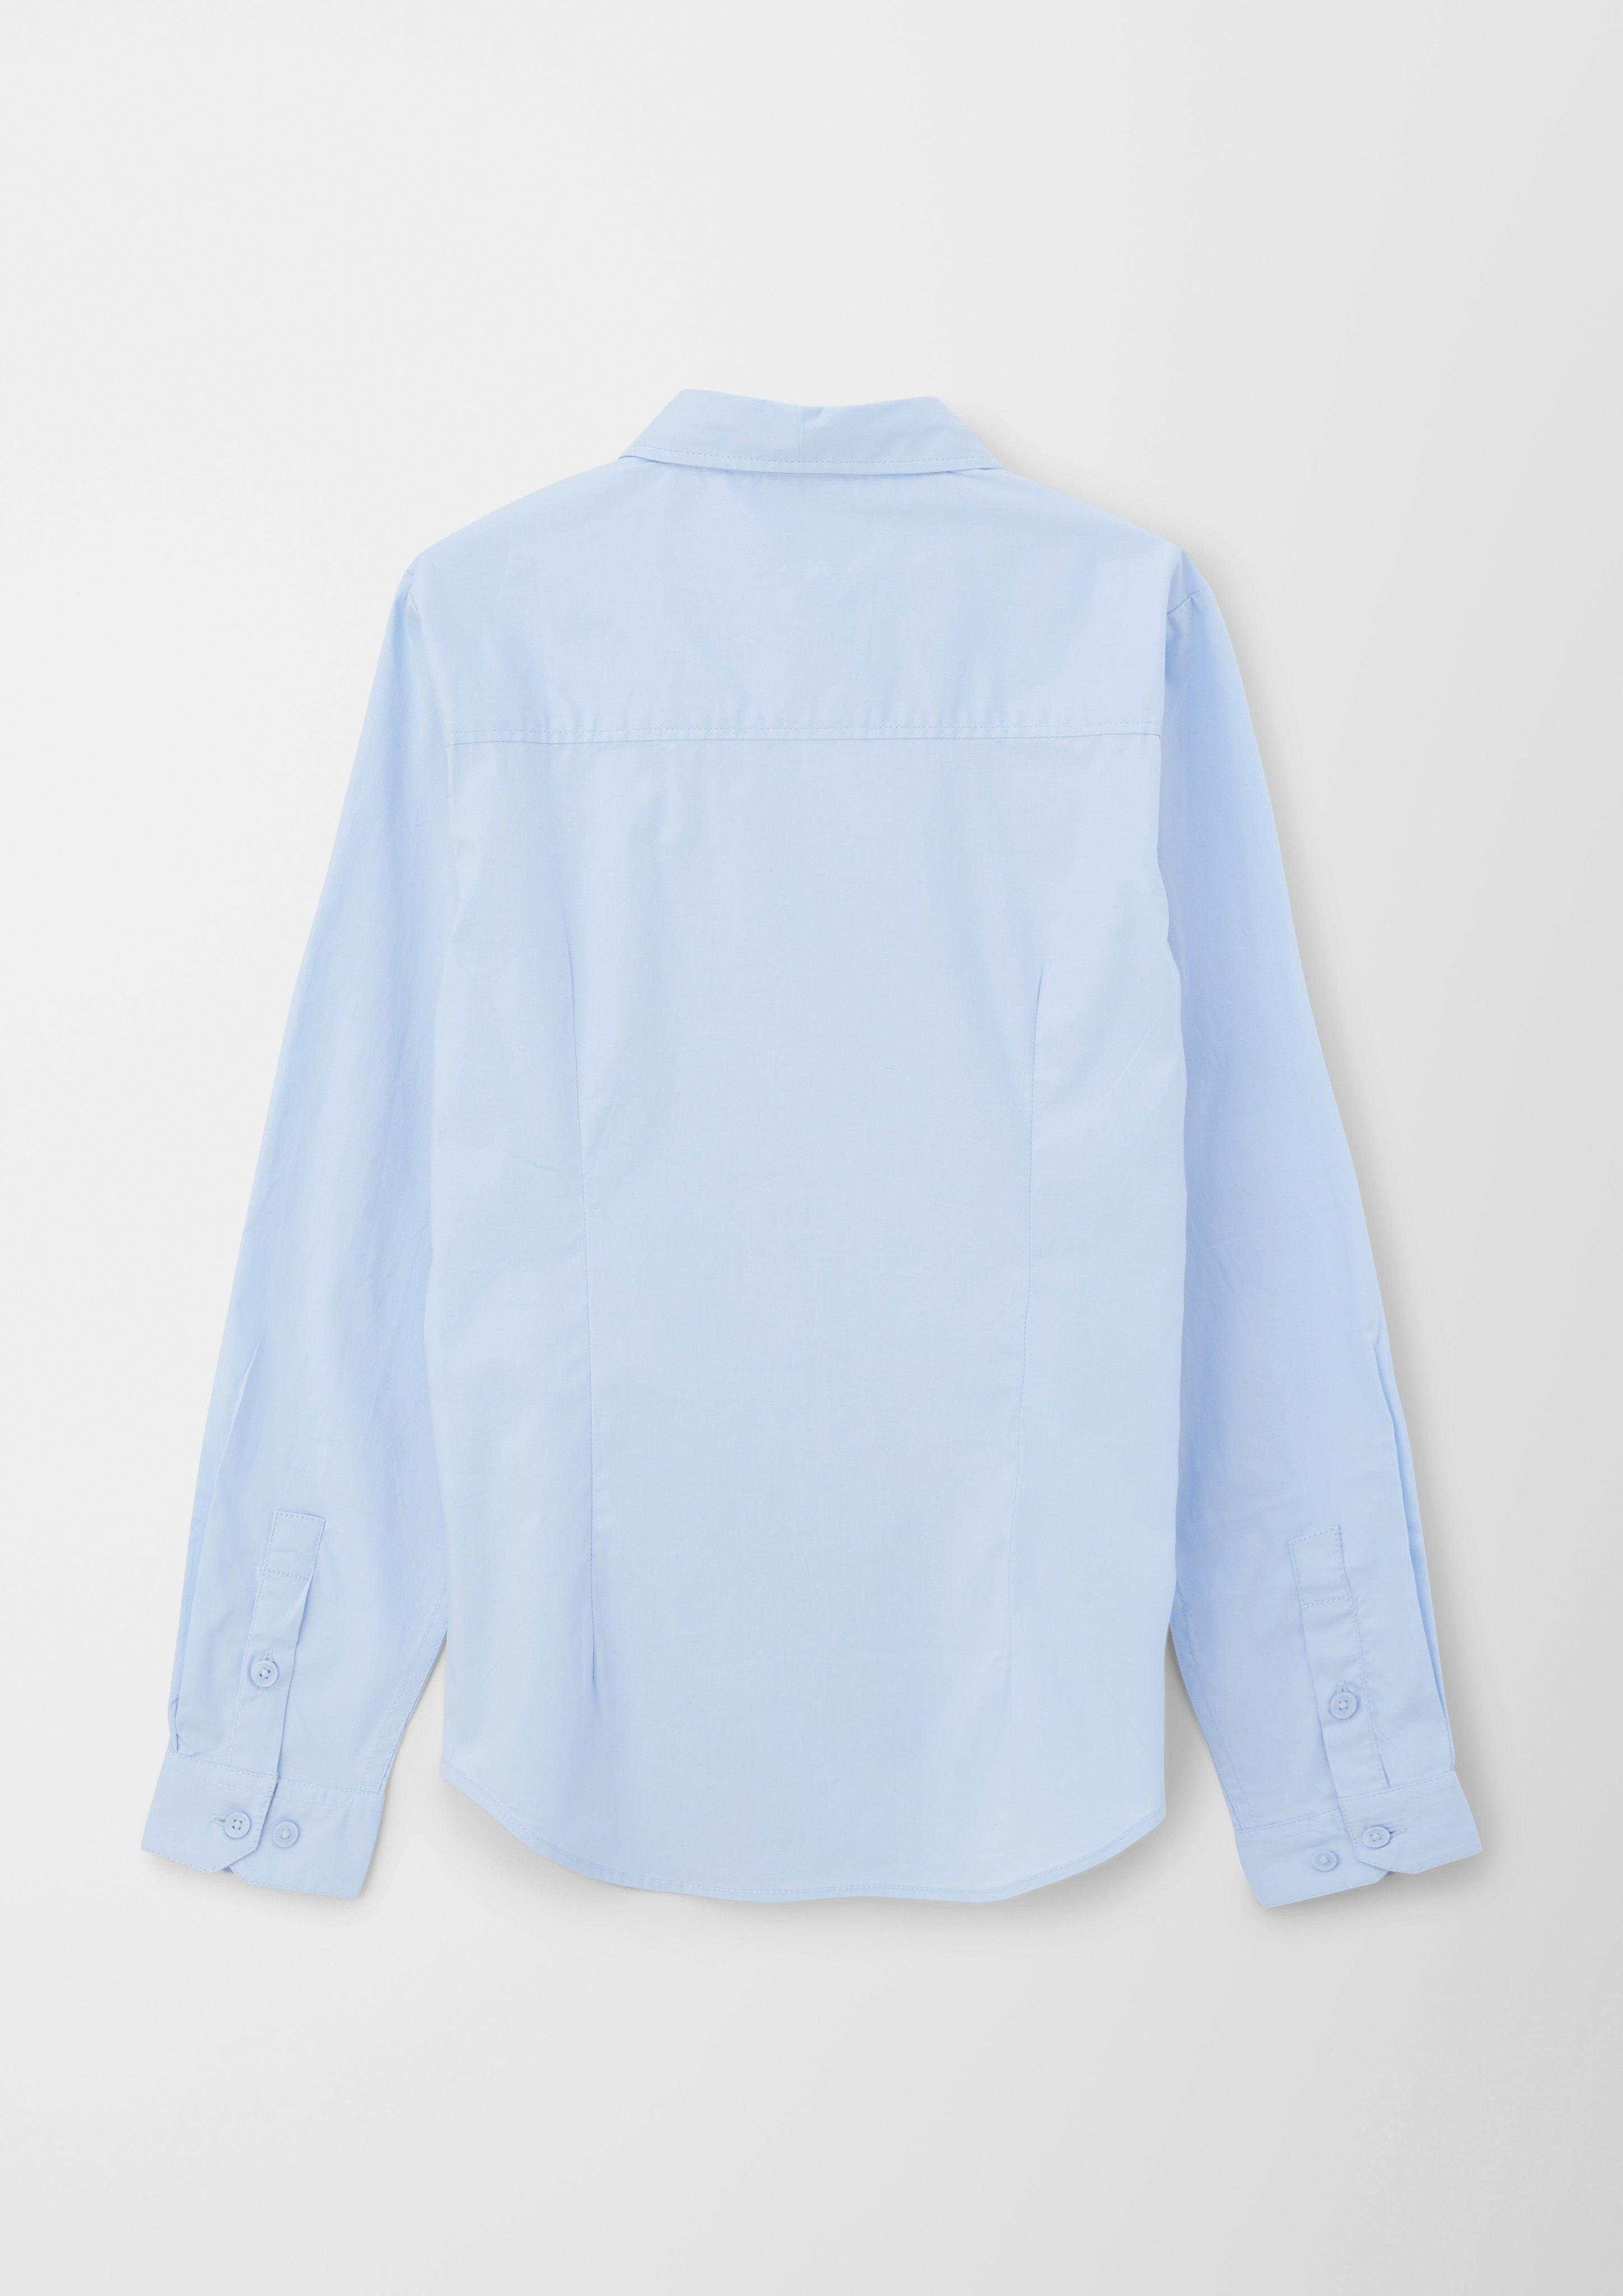 Langarmhemd aus Popeline s.Oliver hellblau Langarmhemd